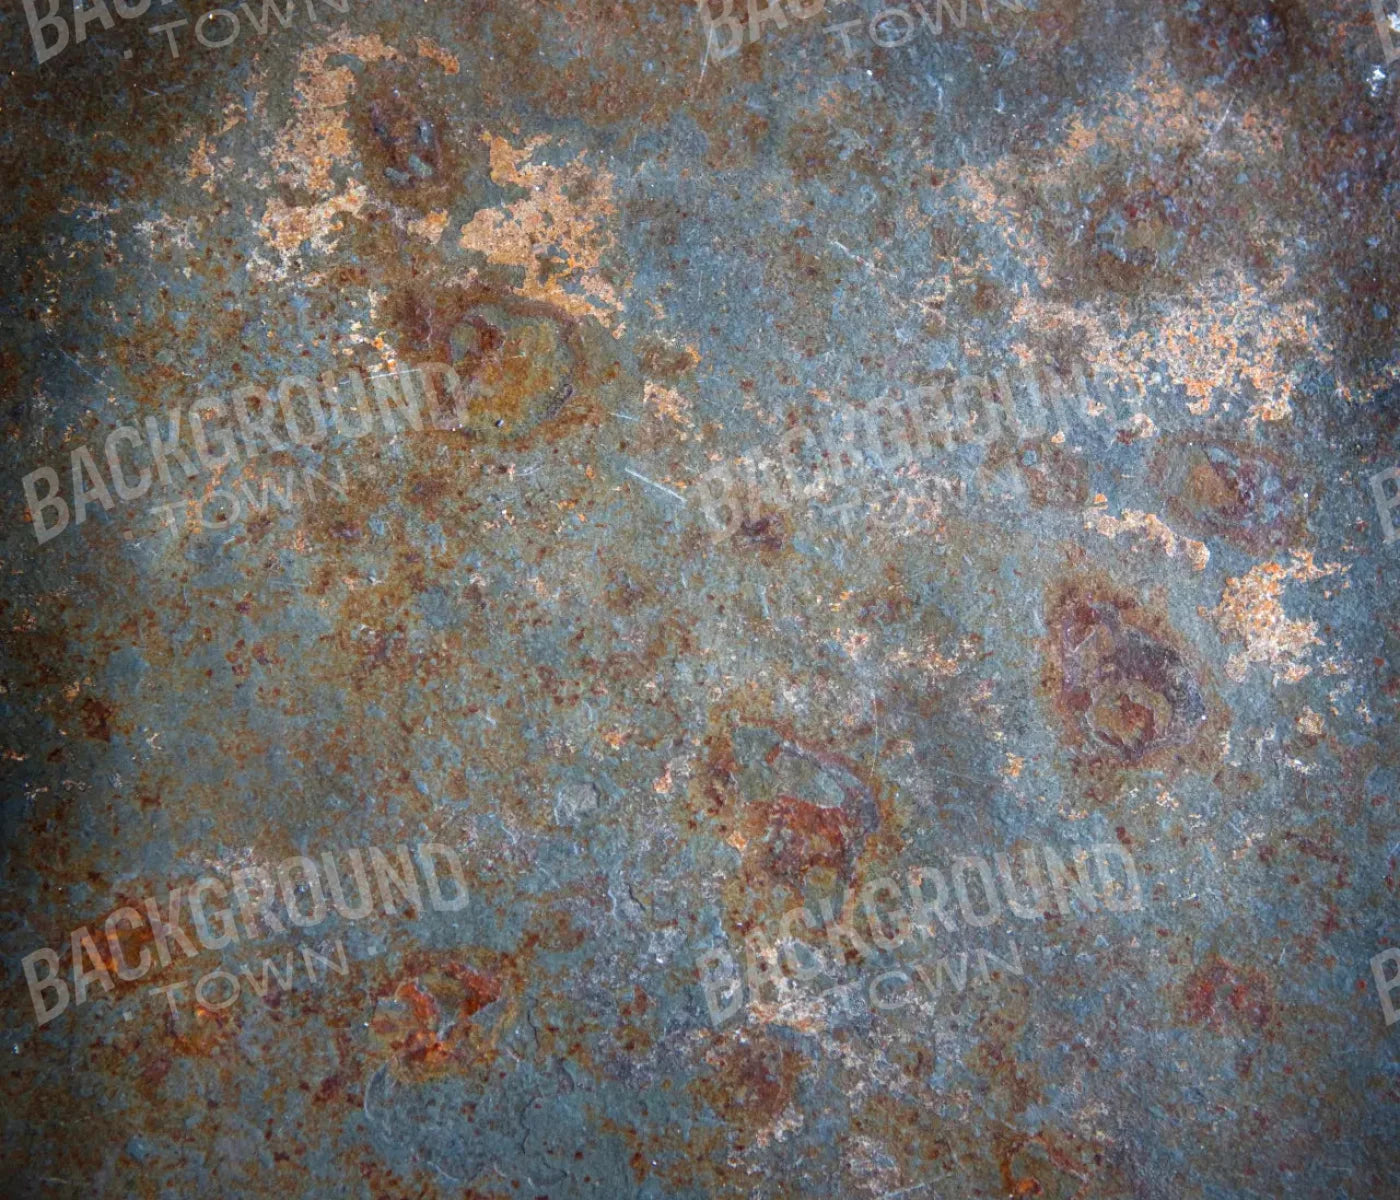 Blue Steel Floor 12X10 Ultracloth ( 144 X 120 Inch ) Backdrop